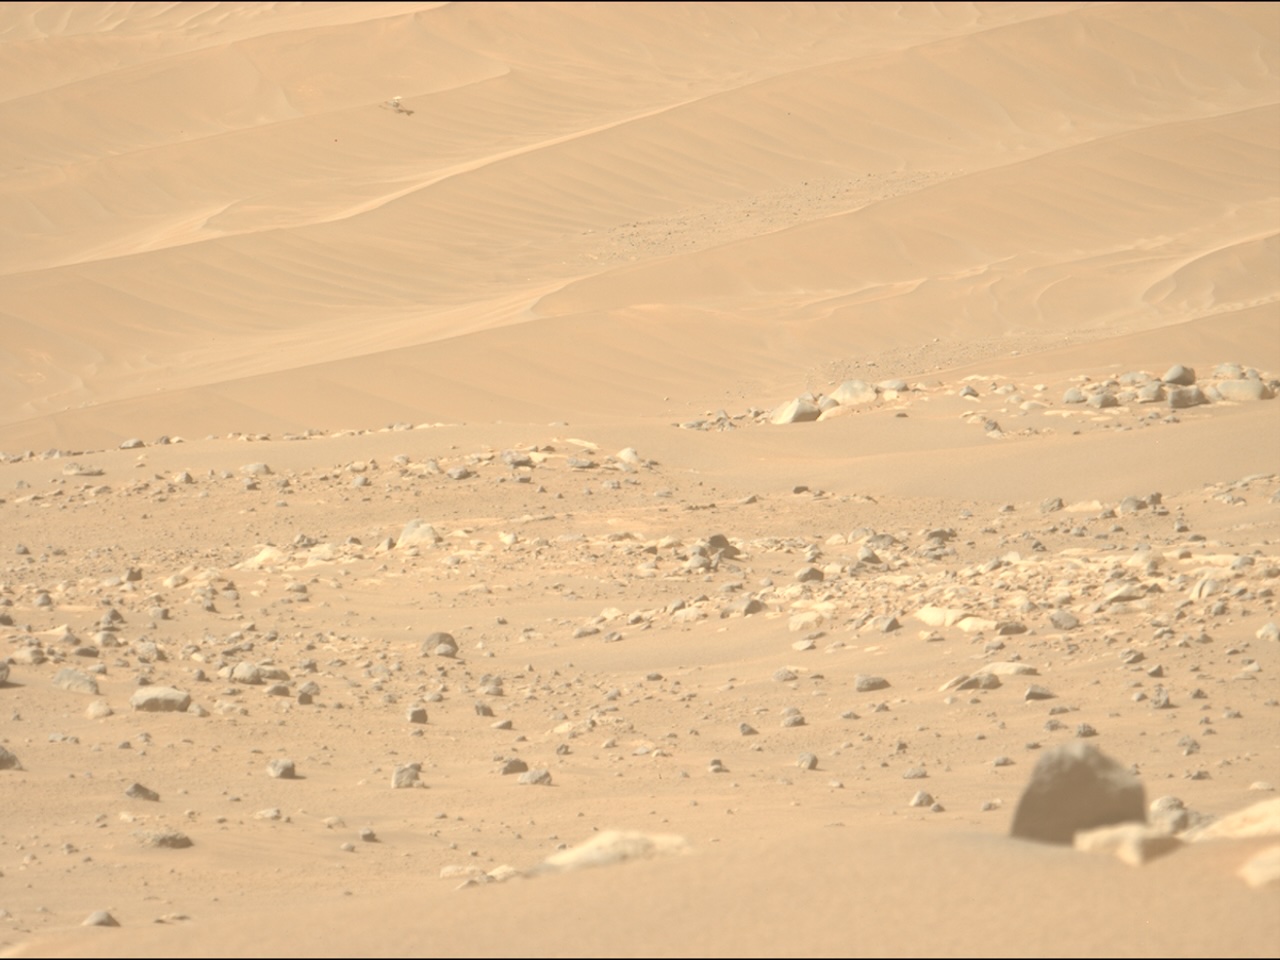 壊れた火星ヘリ「インジェニュイティ」、探査車「パーサヴィアランス」が撮影